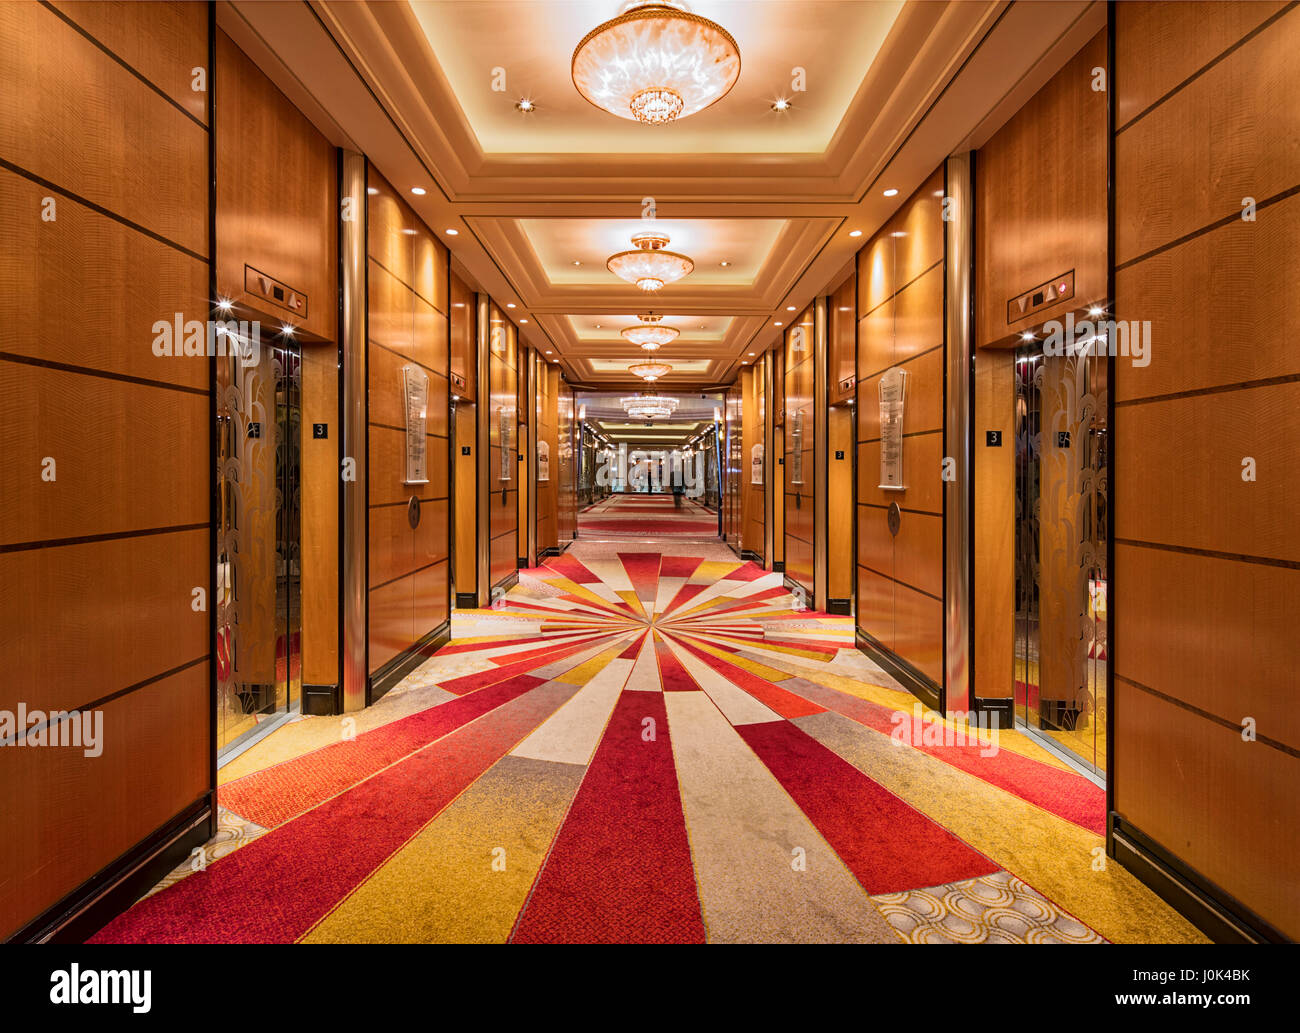 Aufzug Lobby - Innenraum der Queen Mary 2. Cunard Queen Mary 2 Interieur, Southampton, Vereinigtes Königreich. Architekt: SMC Design, 2016. Stockfoto